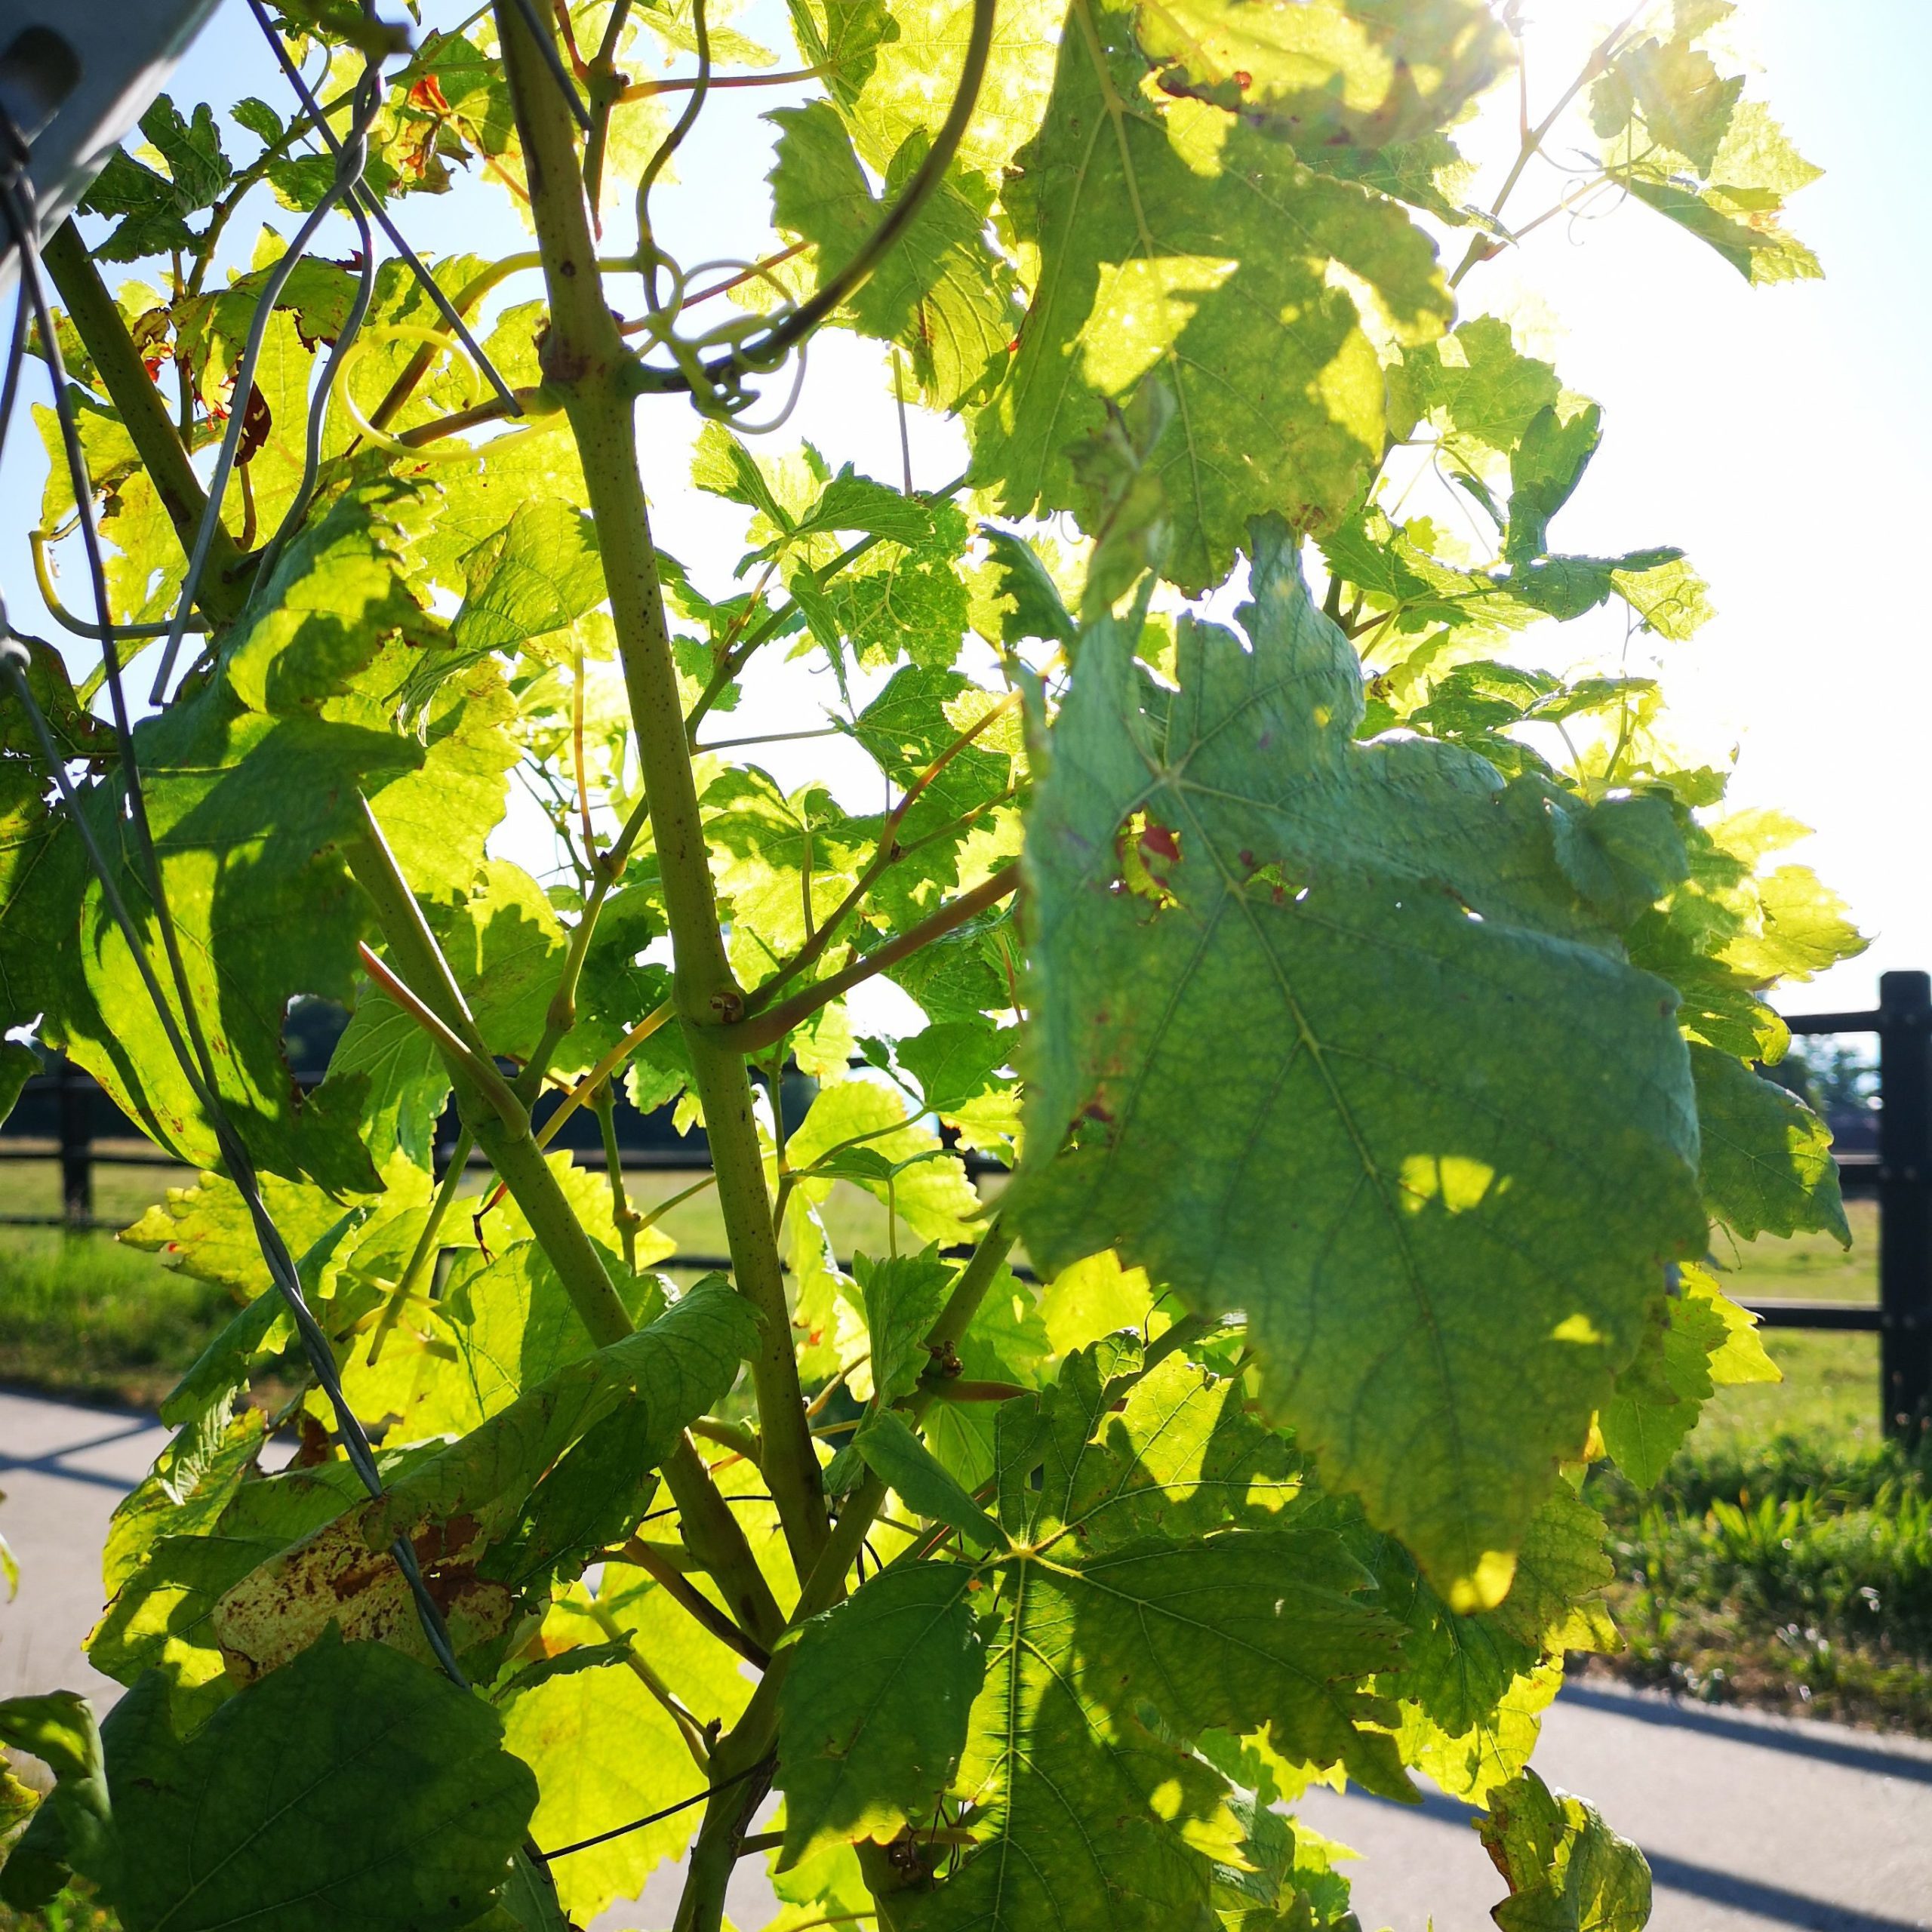 Image des feuilles de la vigne